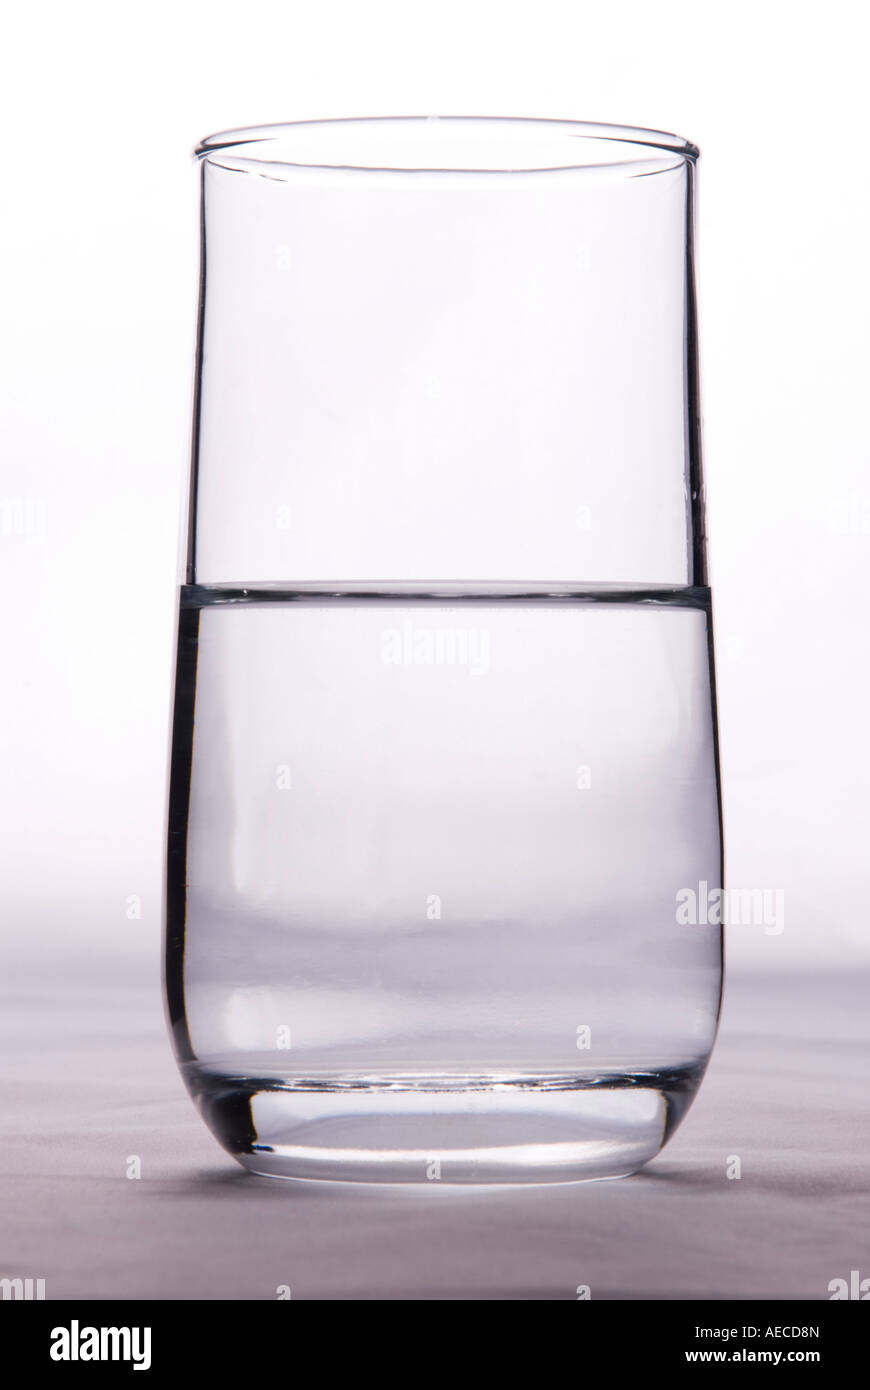 Ein Glas halb voll oder halb leer, um die Idee von Pessimismus und Optimismus zu veranschaulichen Stockfoto